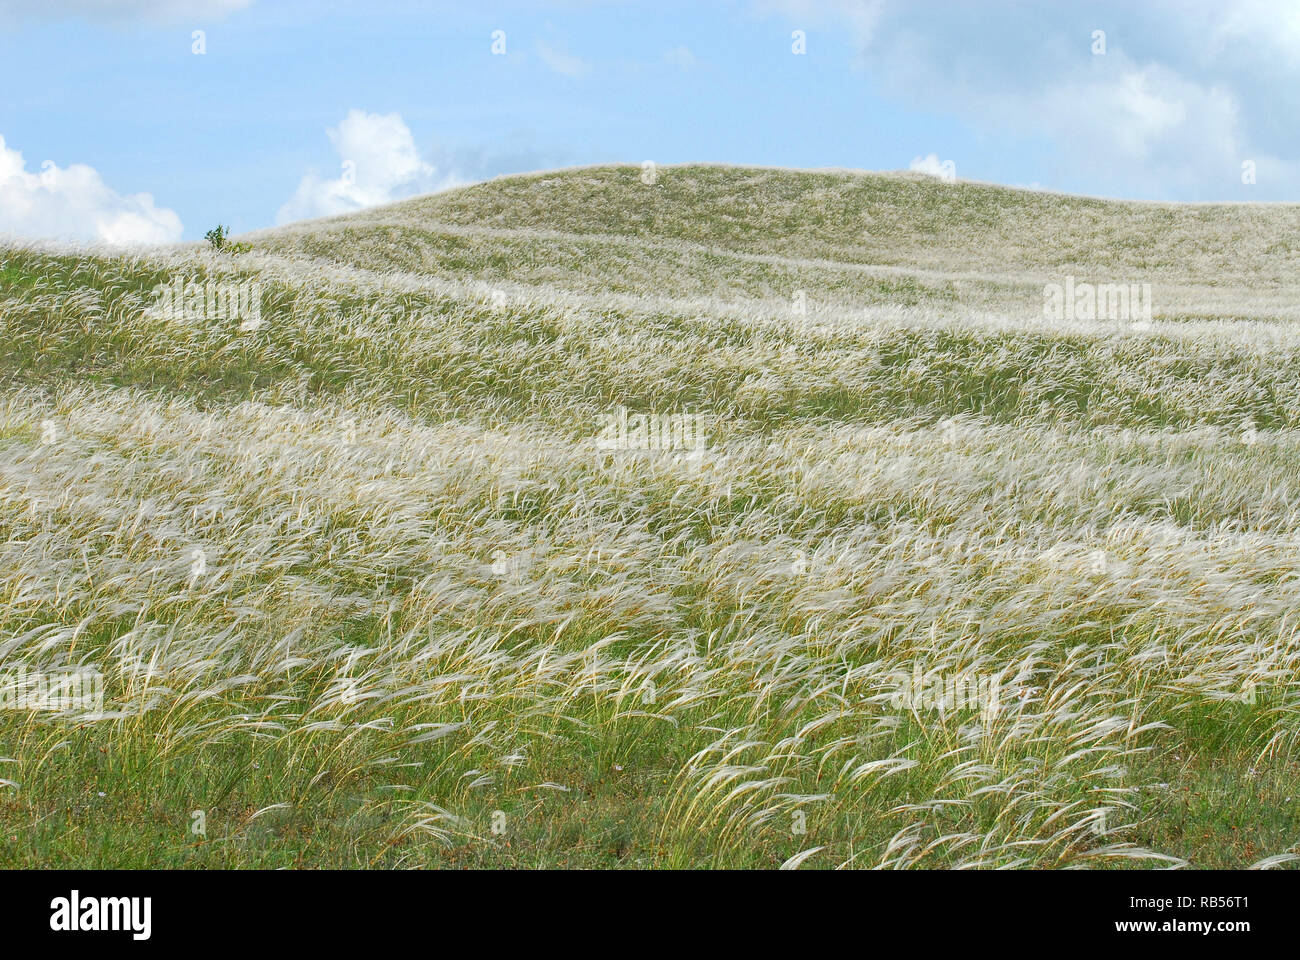 feather grass, needle grass, spear grass, Federgräser Pfriemengräser. Árvalányhajmező Veszprém mellett Magyarországon. Stipa Stock Photo